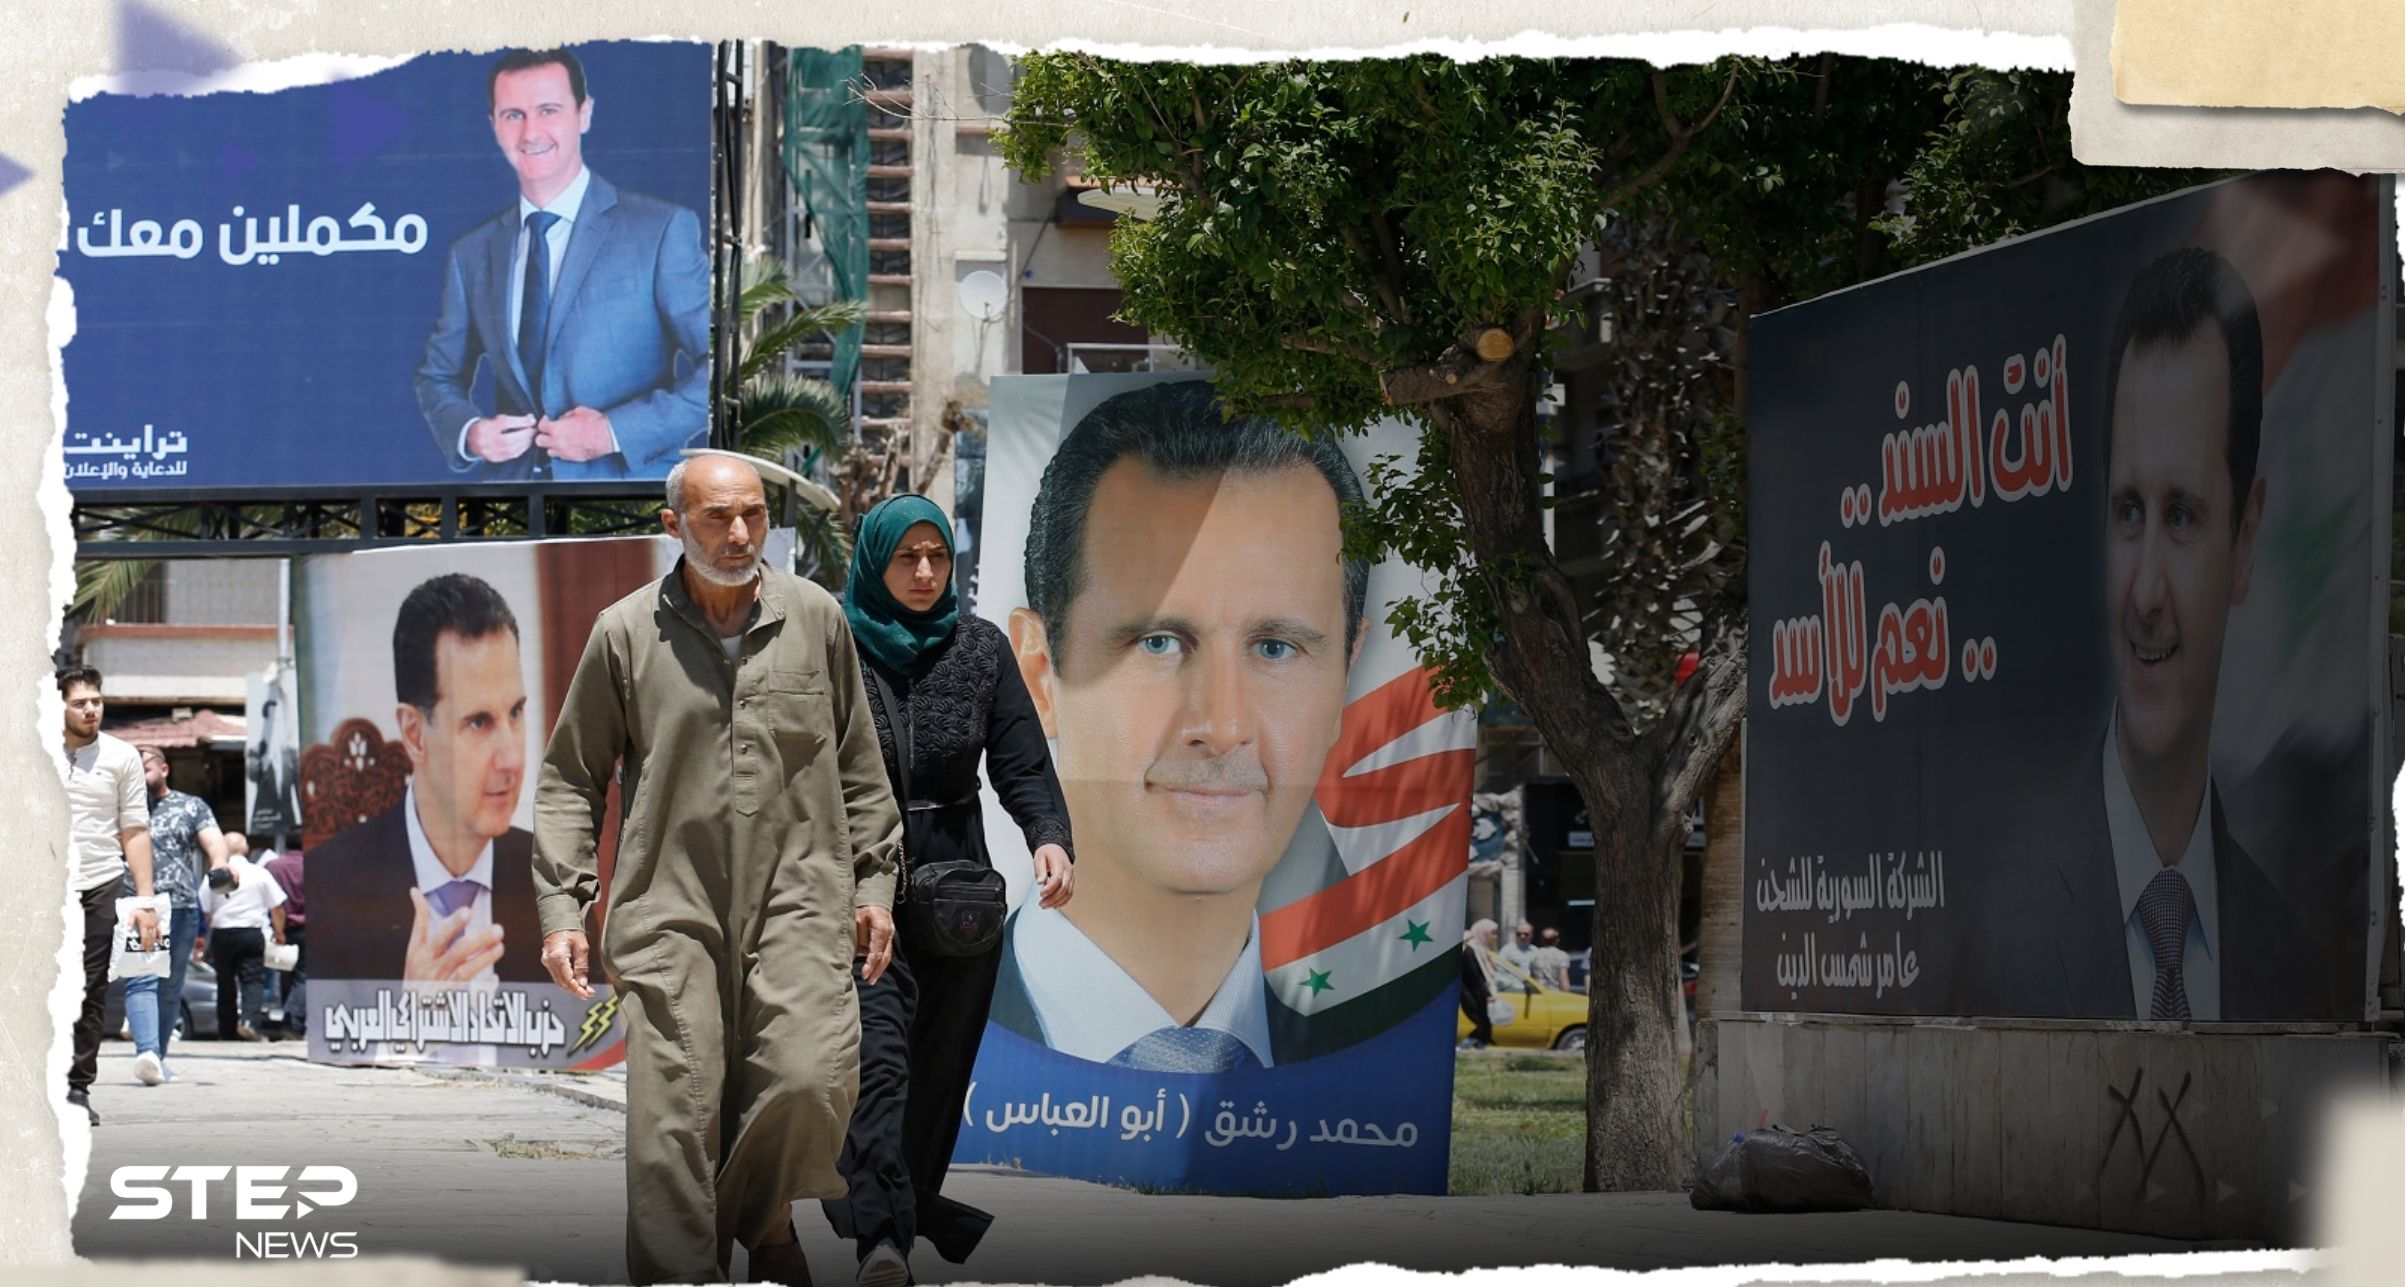 - سخرية من مسيرات الأسد "العفوية"